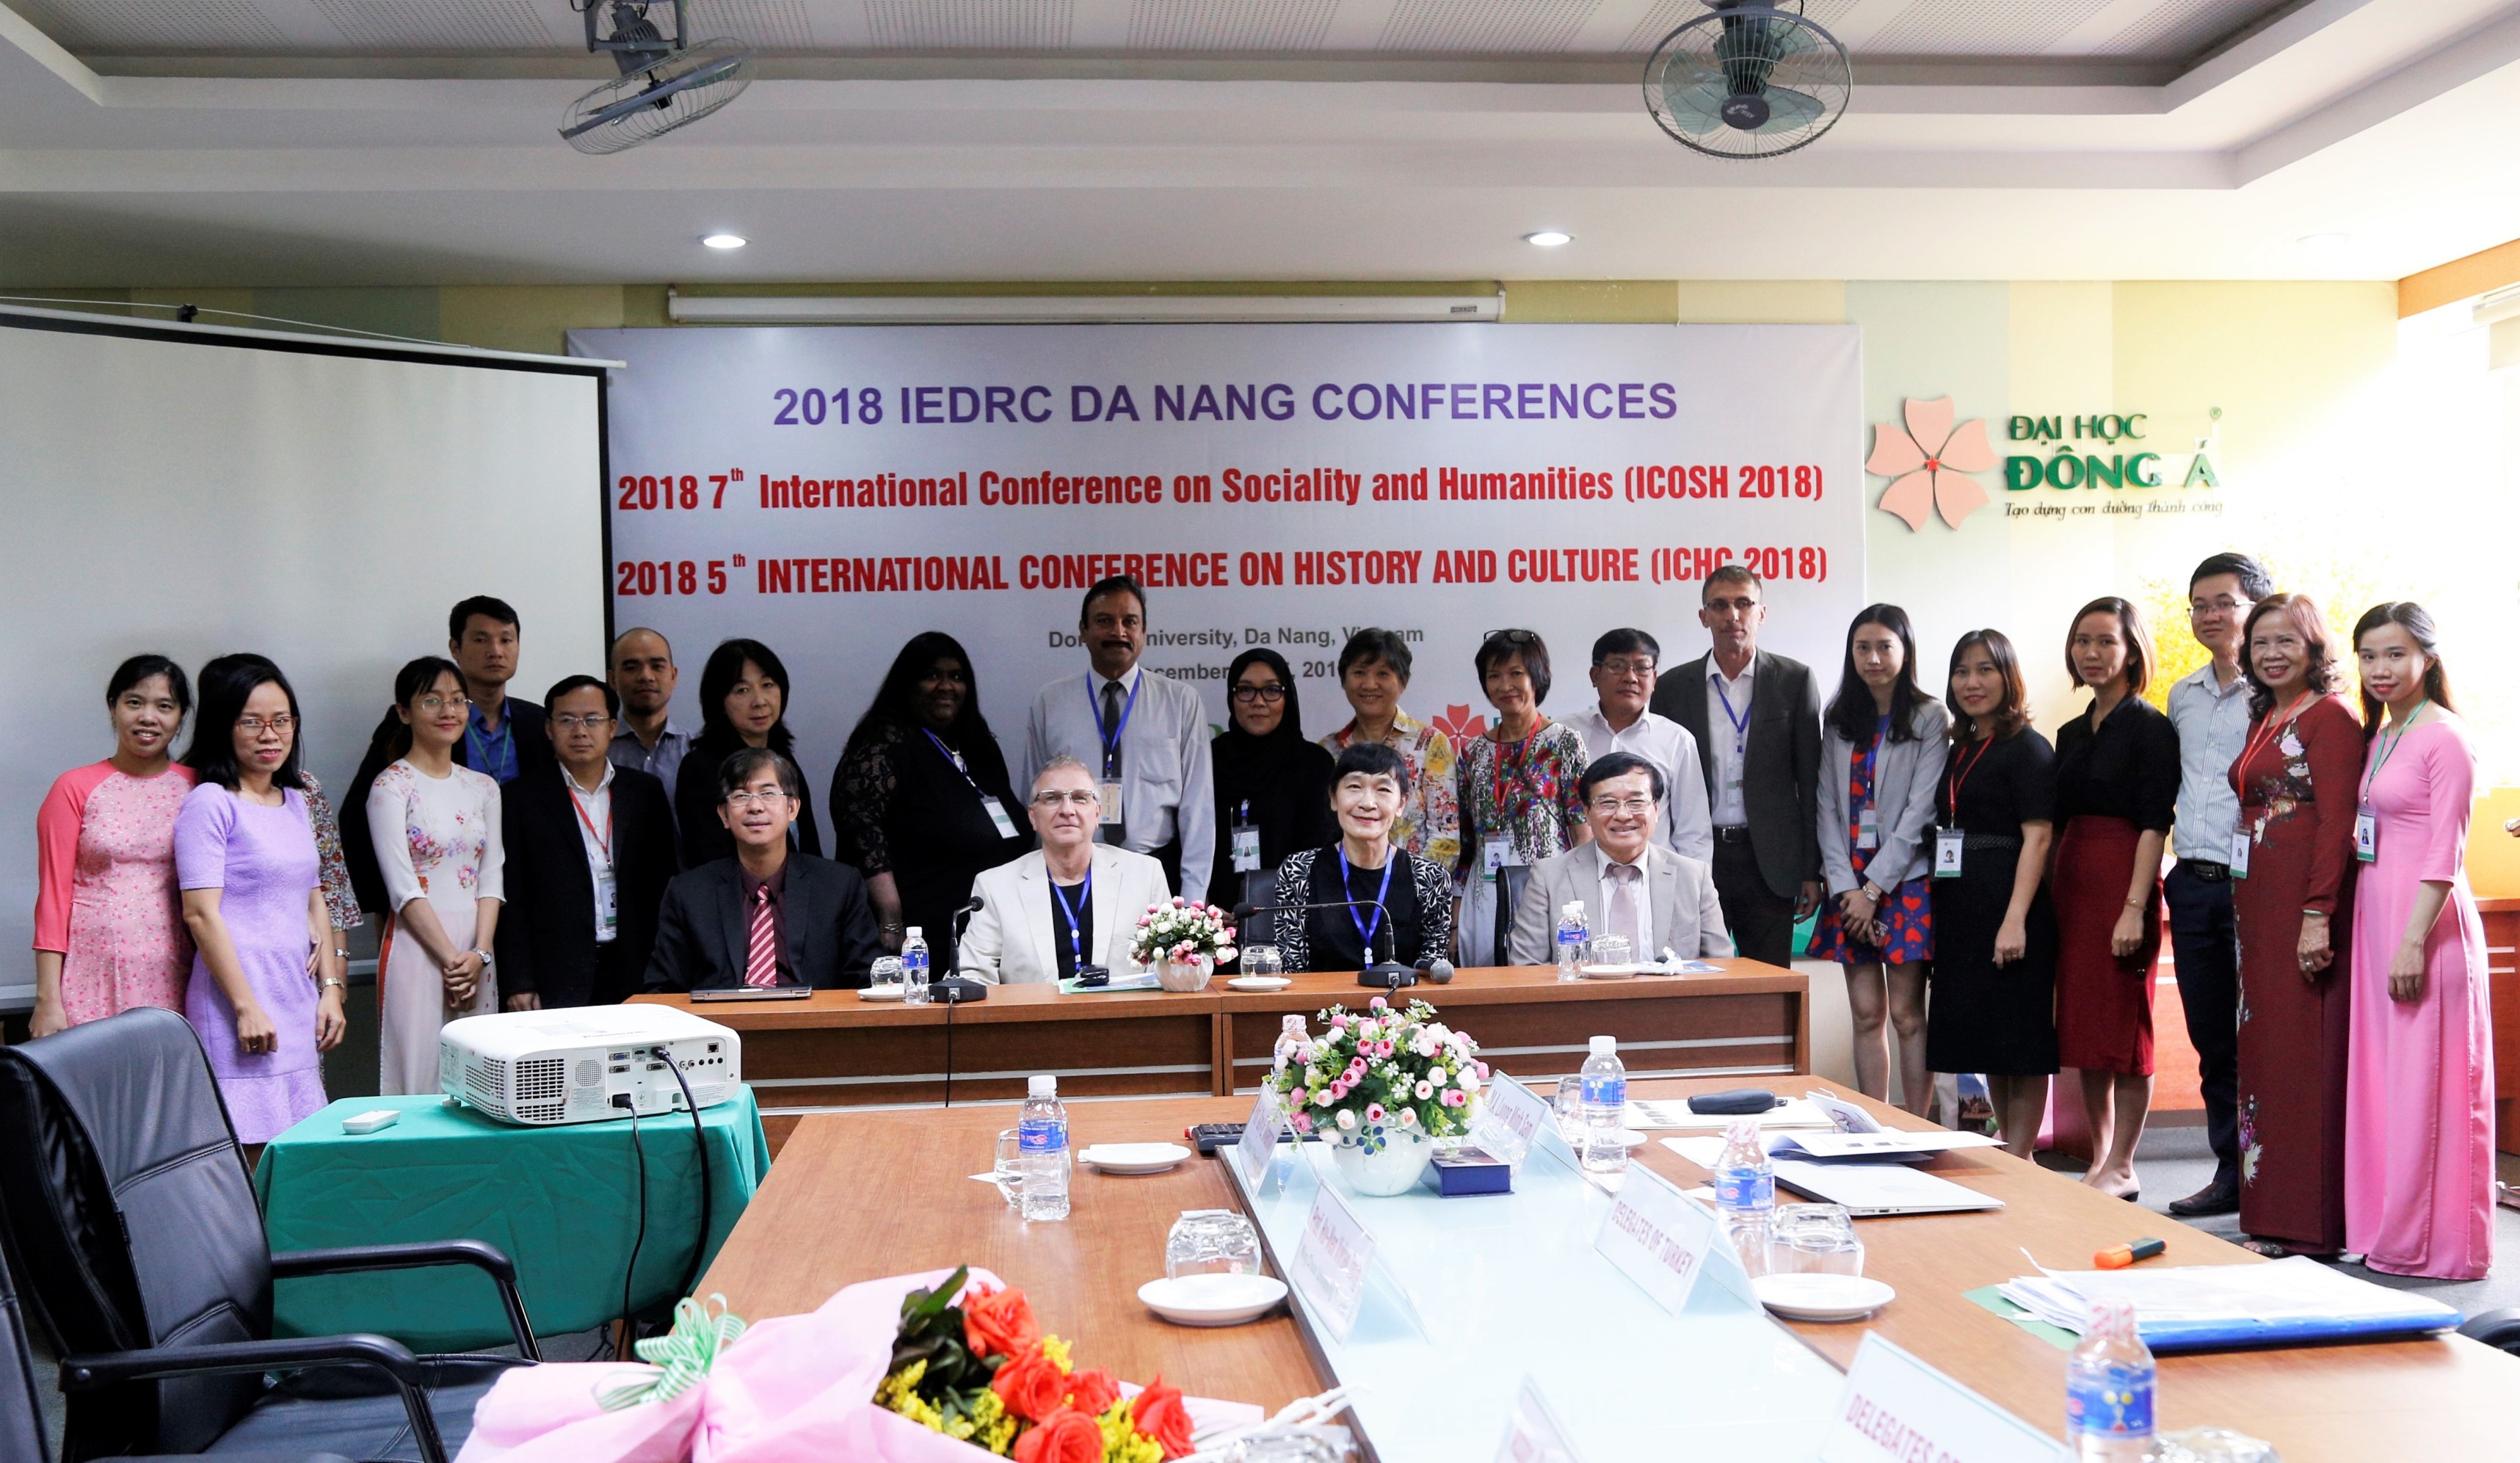 Cơ hội giao lưu kiến thức cho giảng viên và sinh viên Đại học Đông Á thông qua chuỗi hội thảo khoa học quốc tế ICOSH và ICHC 2018